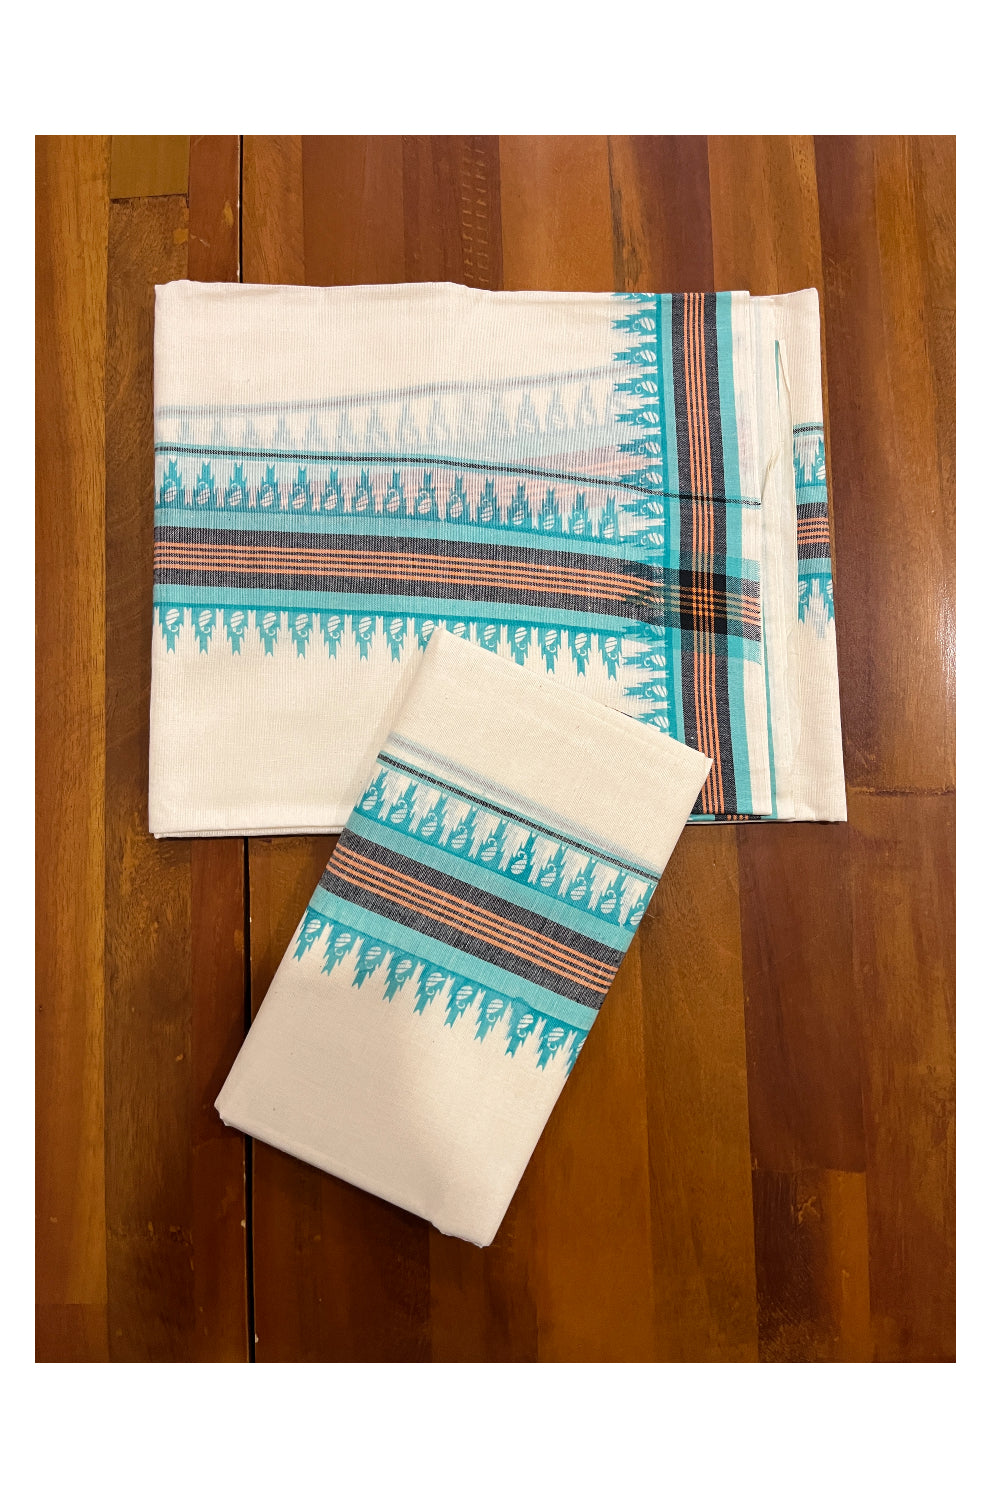 Kerala Cotton Mulloth Mundum Neriyathum Single (Set Mundu) with Turquoise Temple Block Prints on Border (Extra Soft Cotton)